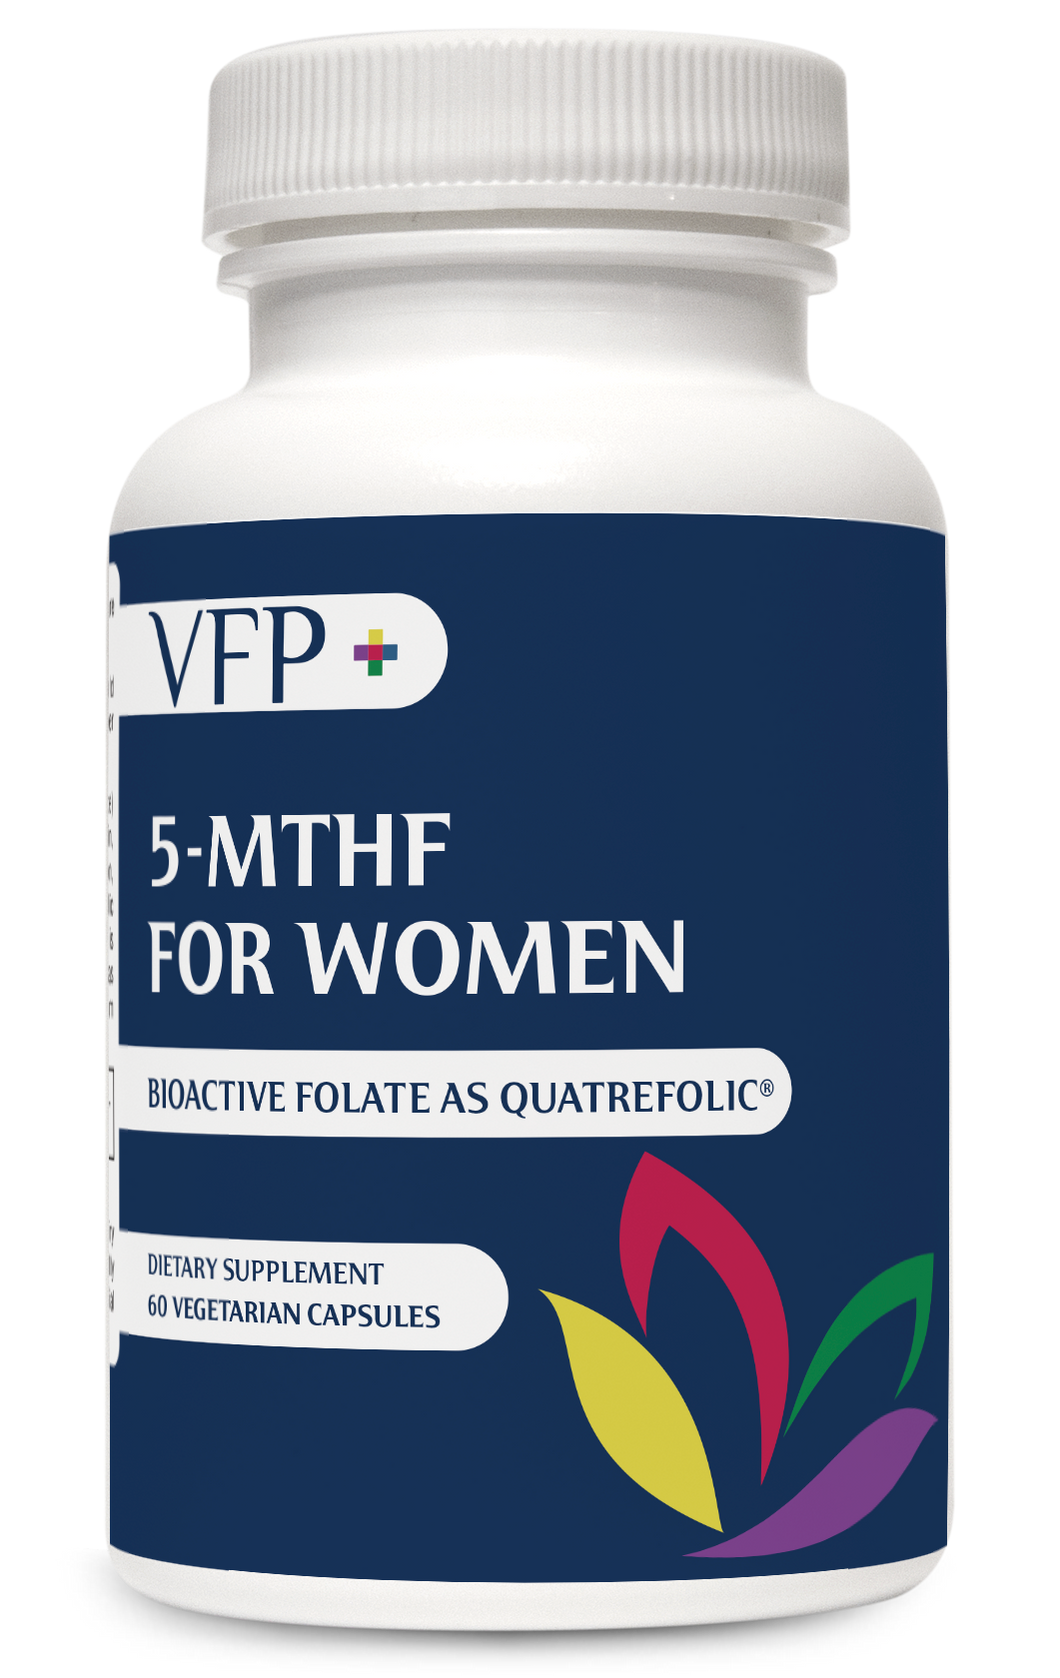 5-MTHF for Women.